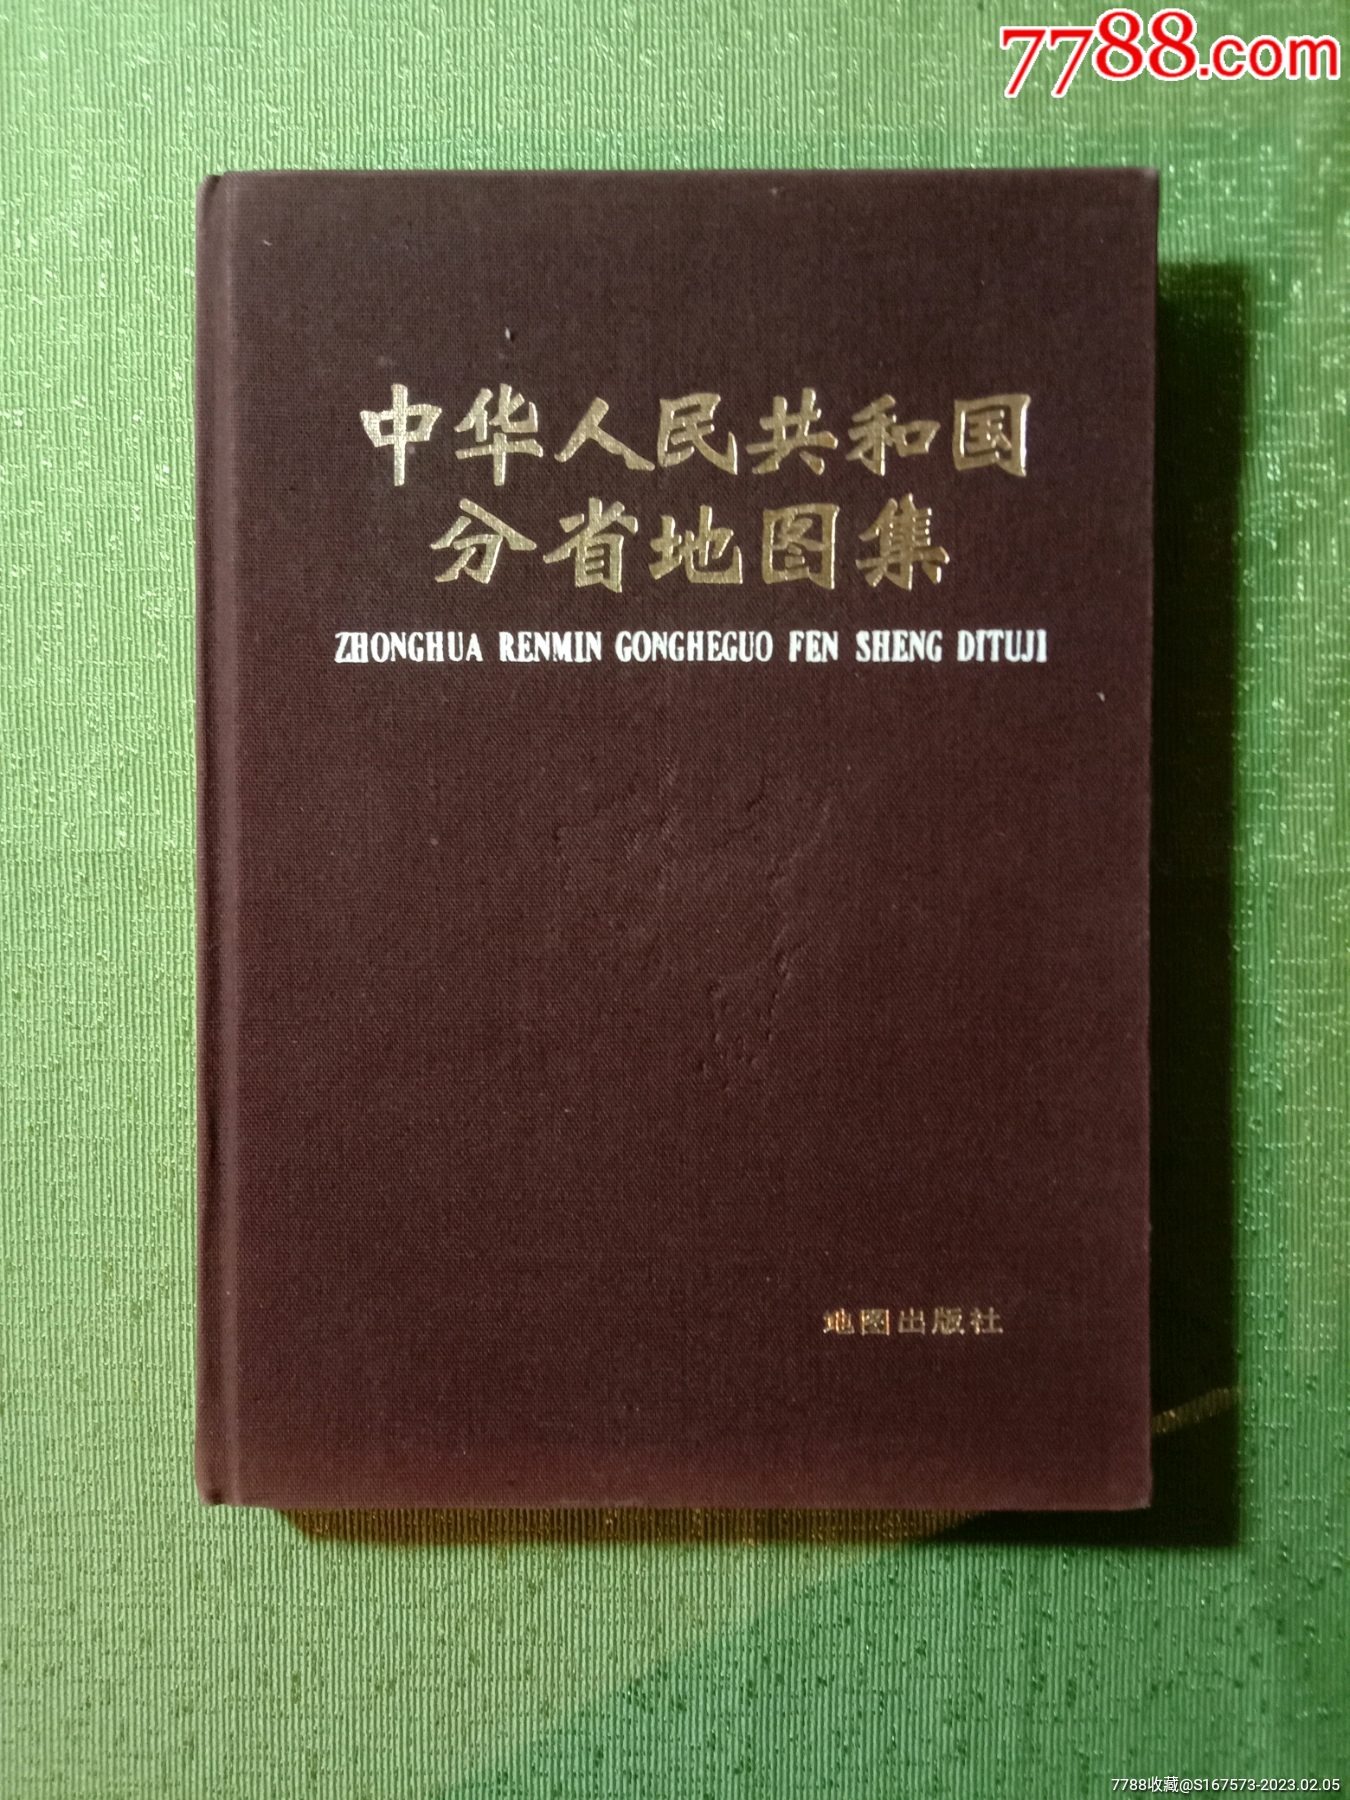 中华人民共和国分省地图集·1984年·布面精装本。-手册/工具书-7788红宝书